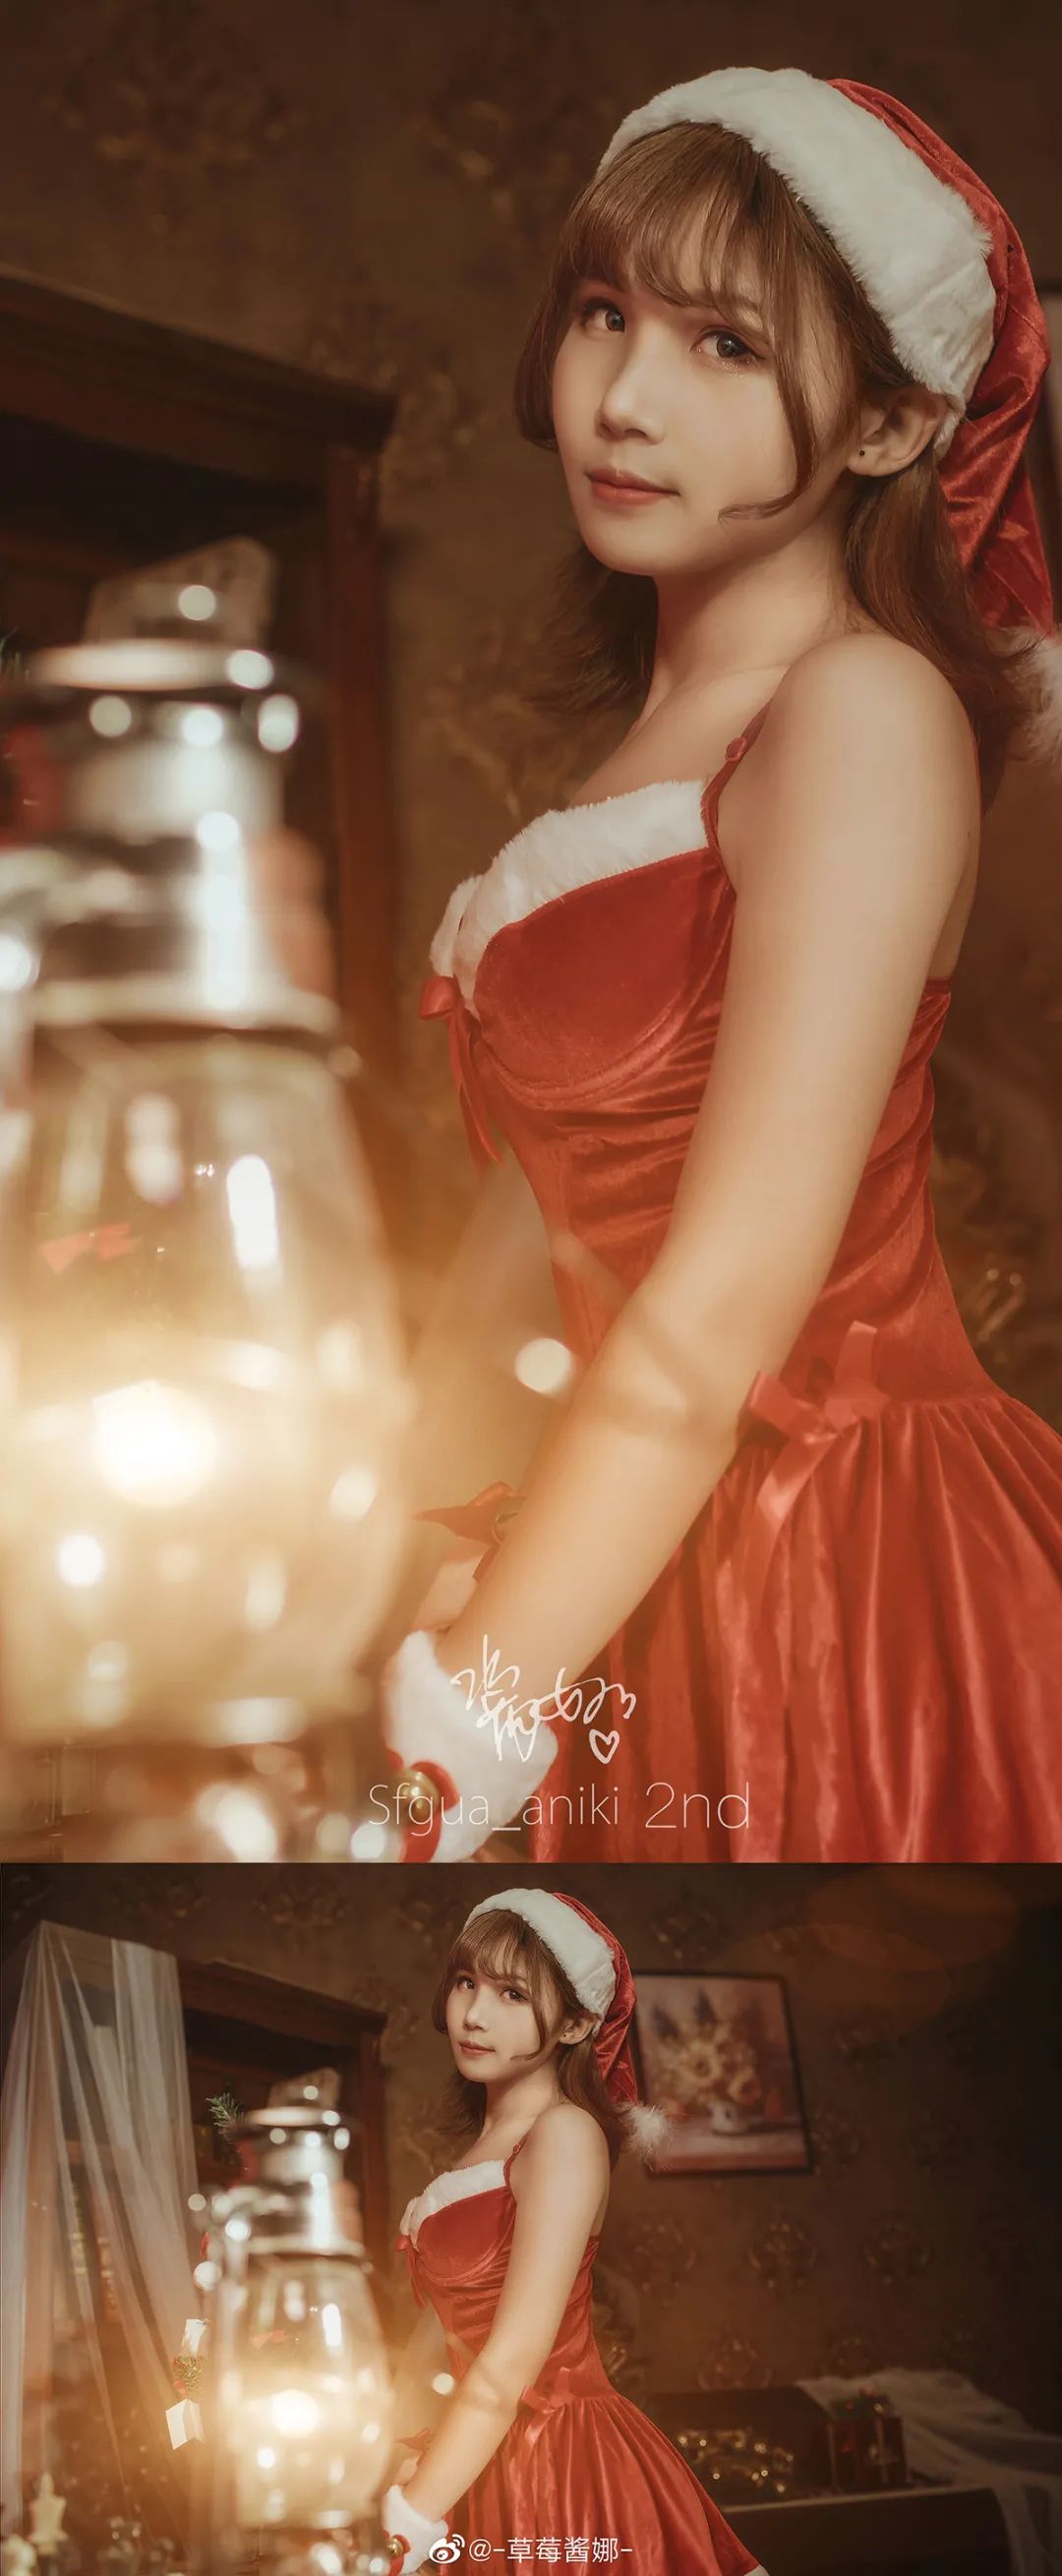 妹子摄影 – 白丝袜红色圣诞服小短裙女郎，她真的好挺！_图片 No.2